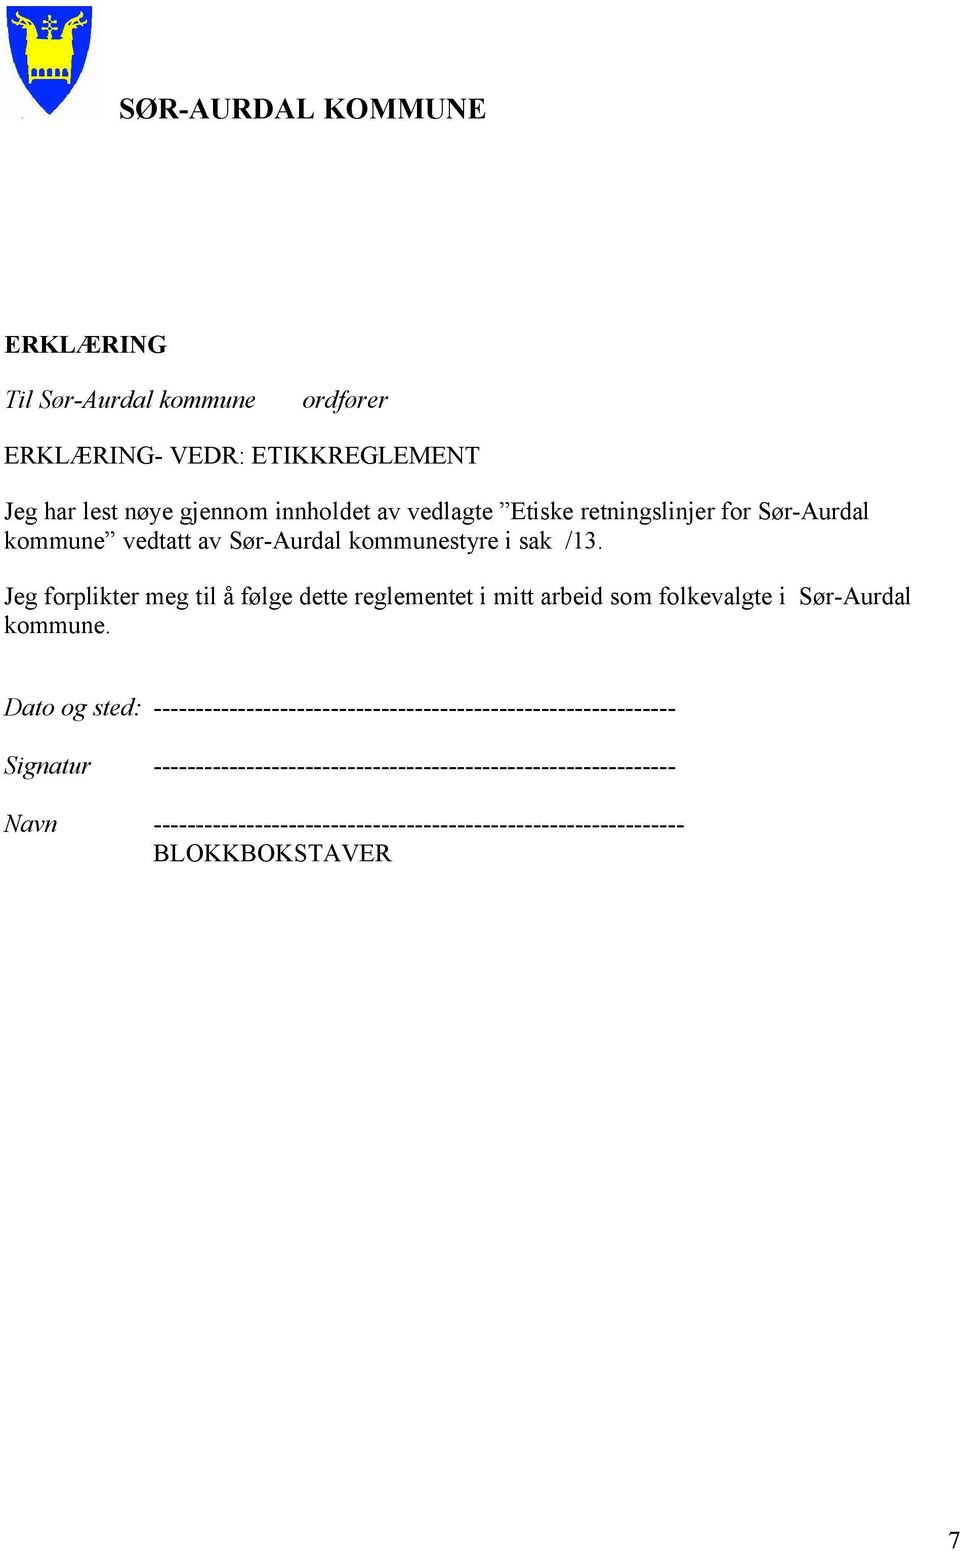 Jeg forplikter meg til å følge dette reglementet i mitt arbeid som folkevalgte i Sør-Aurdal kommune.